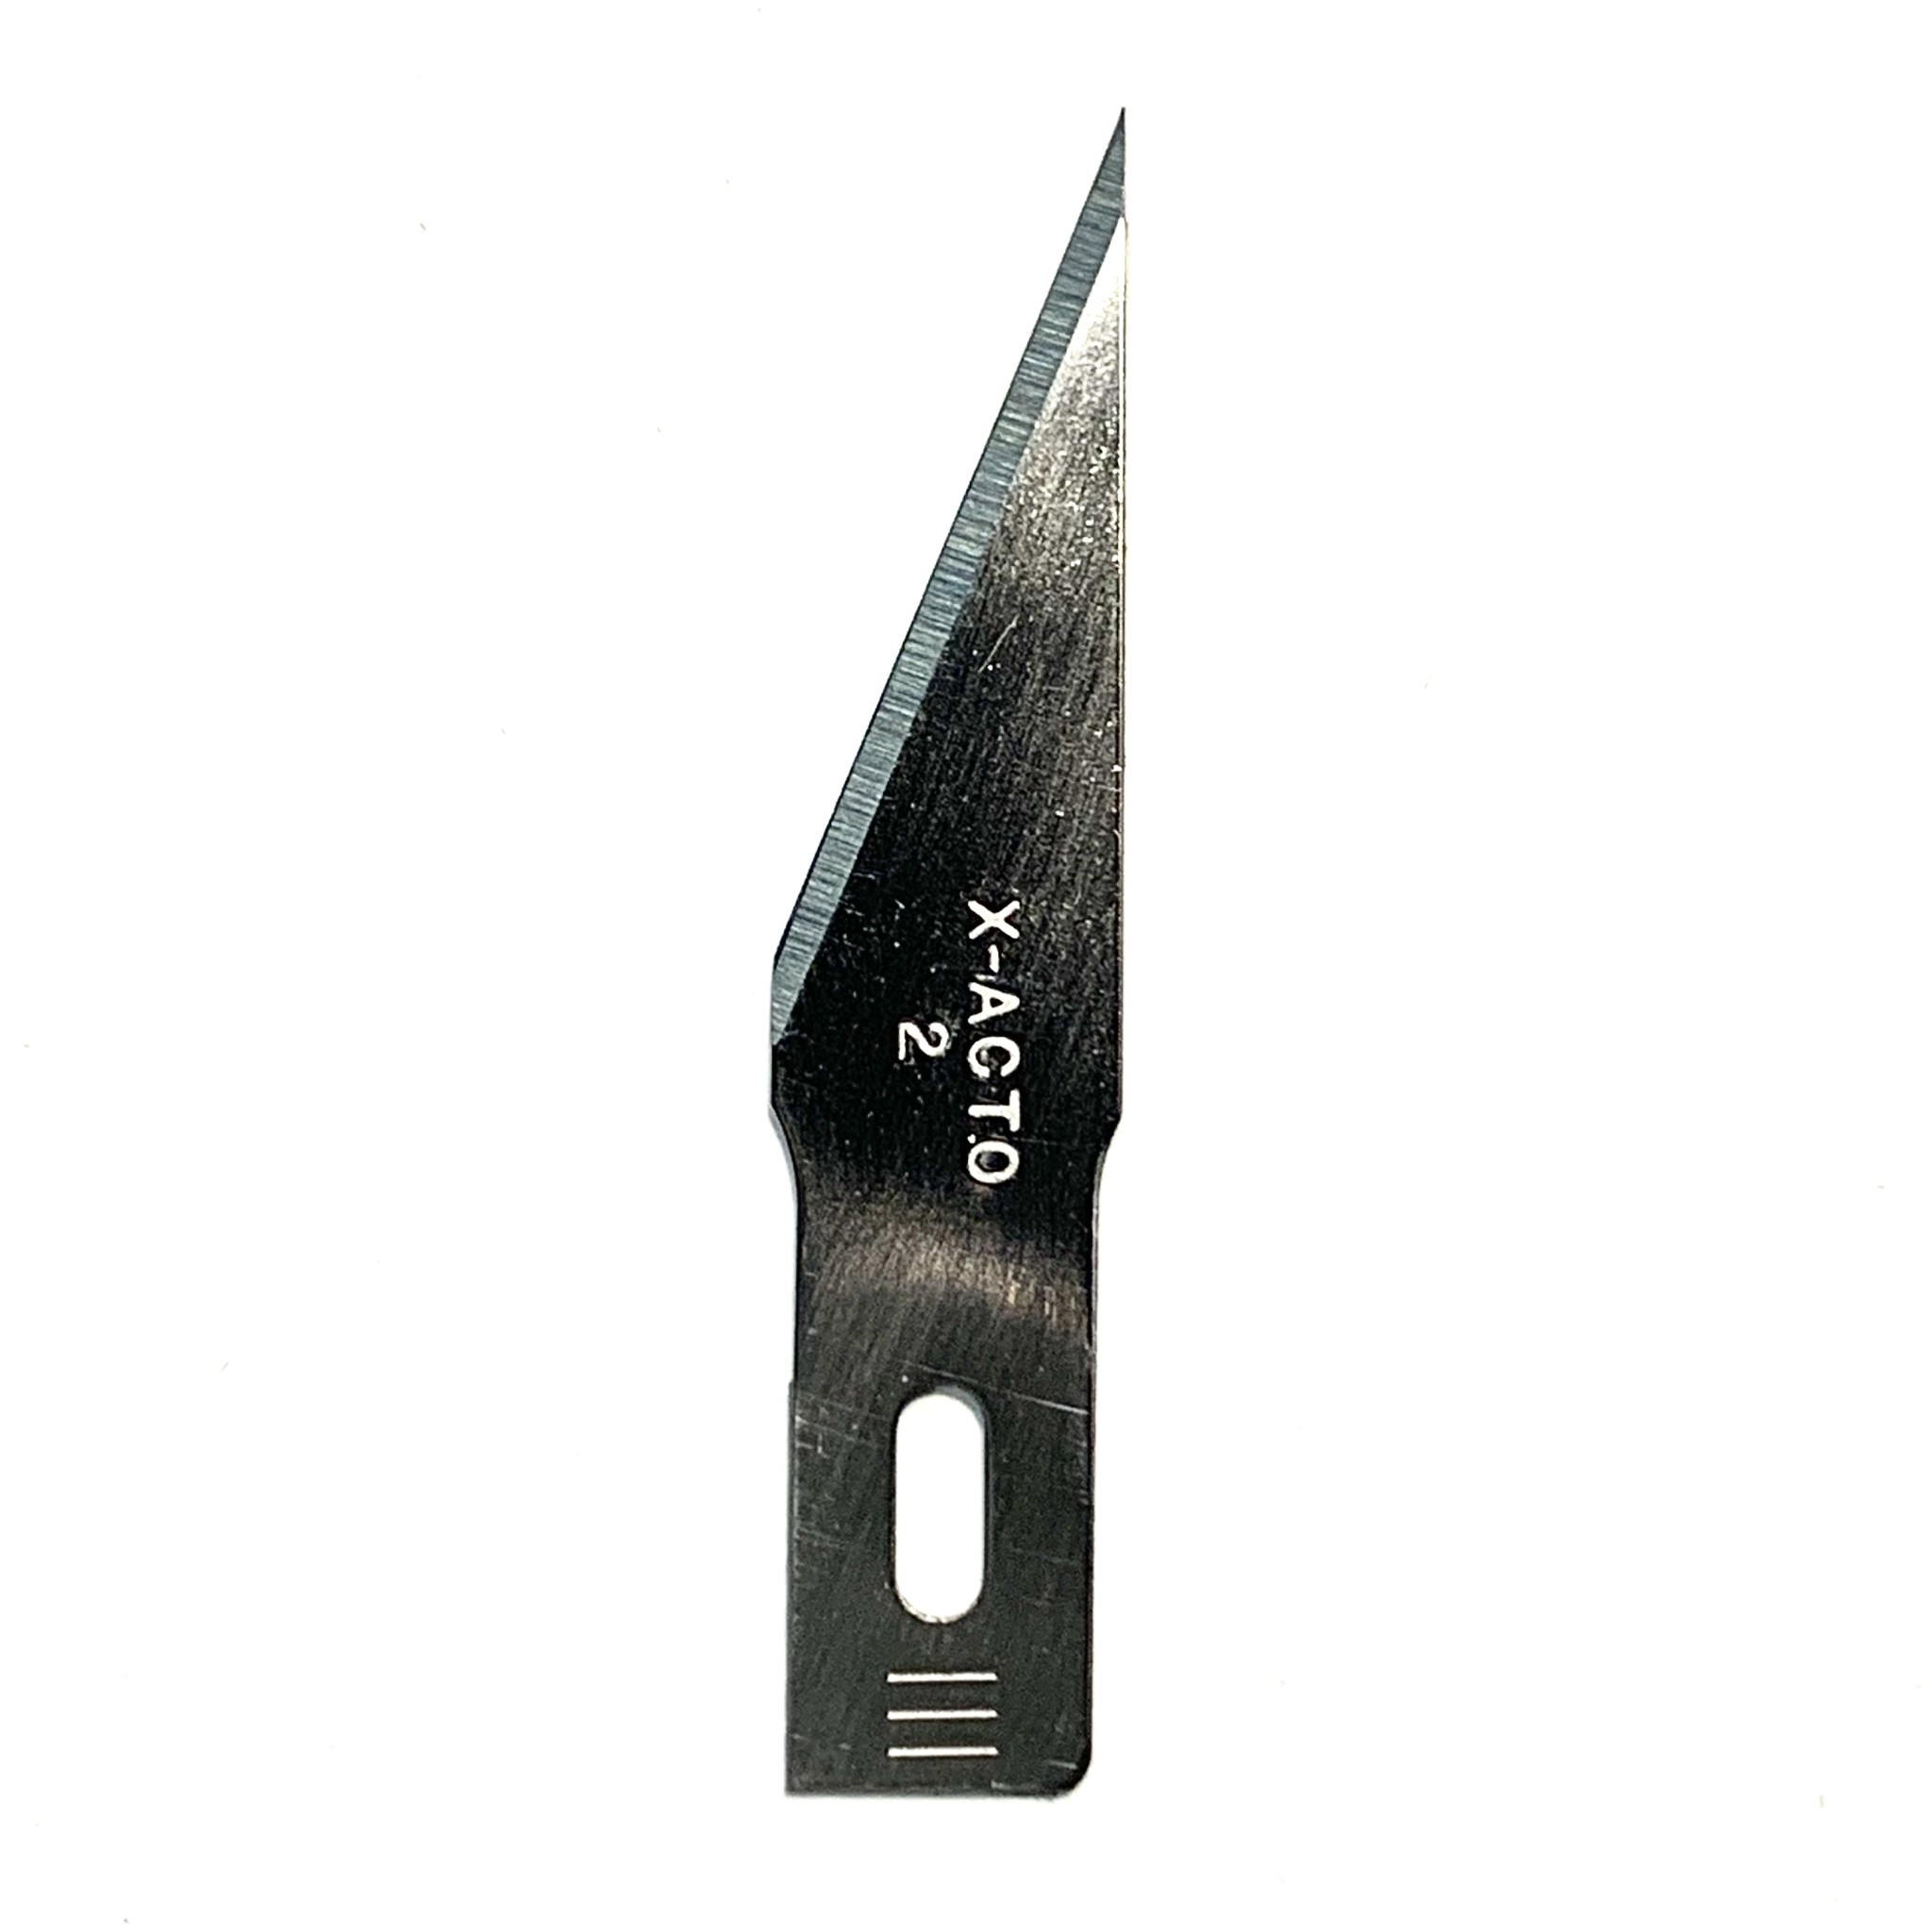 x acto knife blade sizes